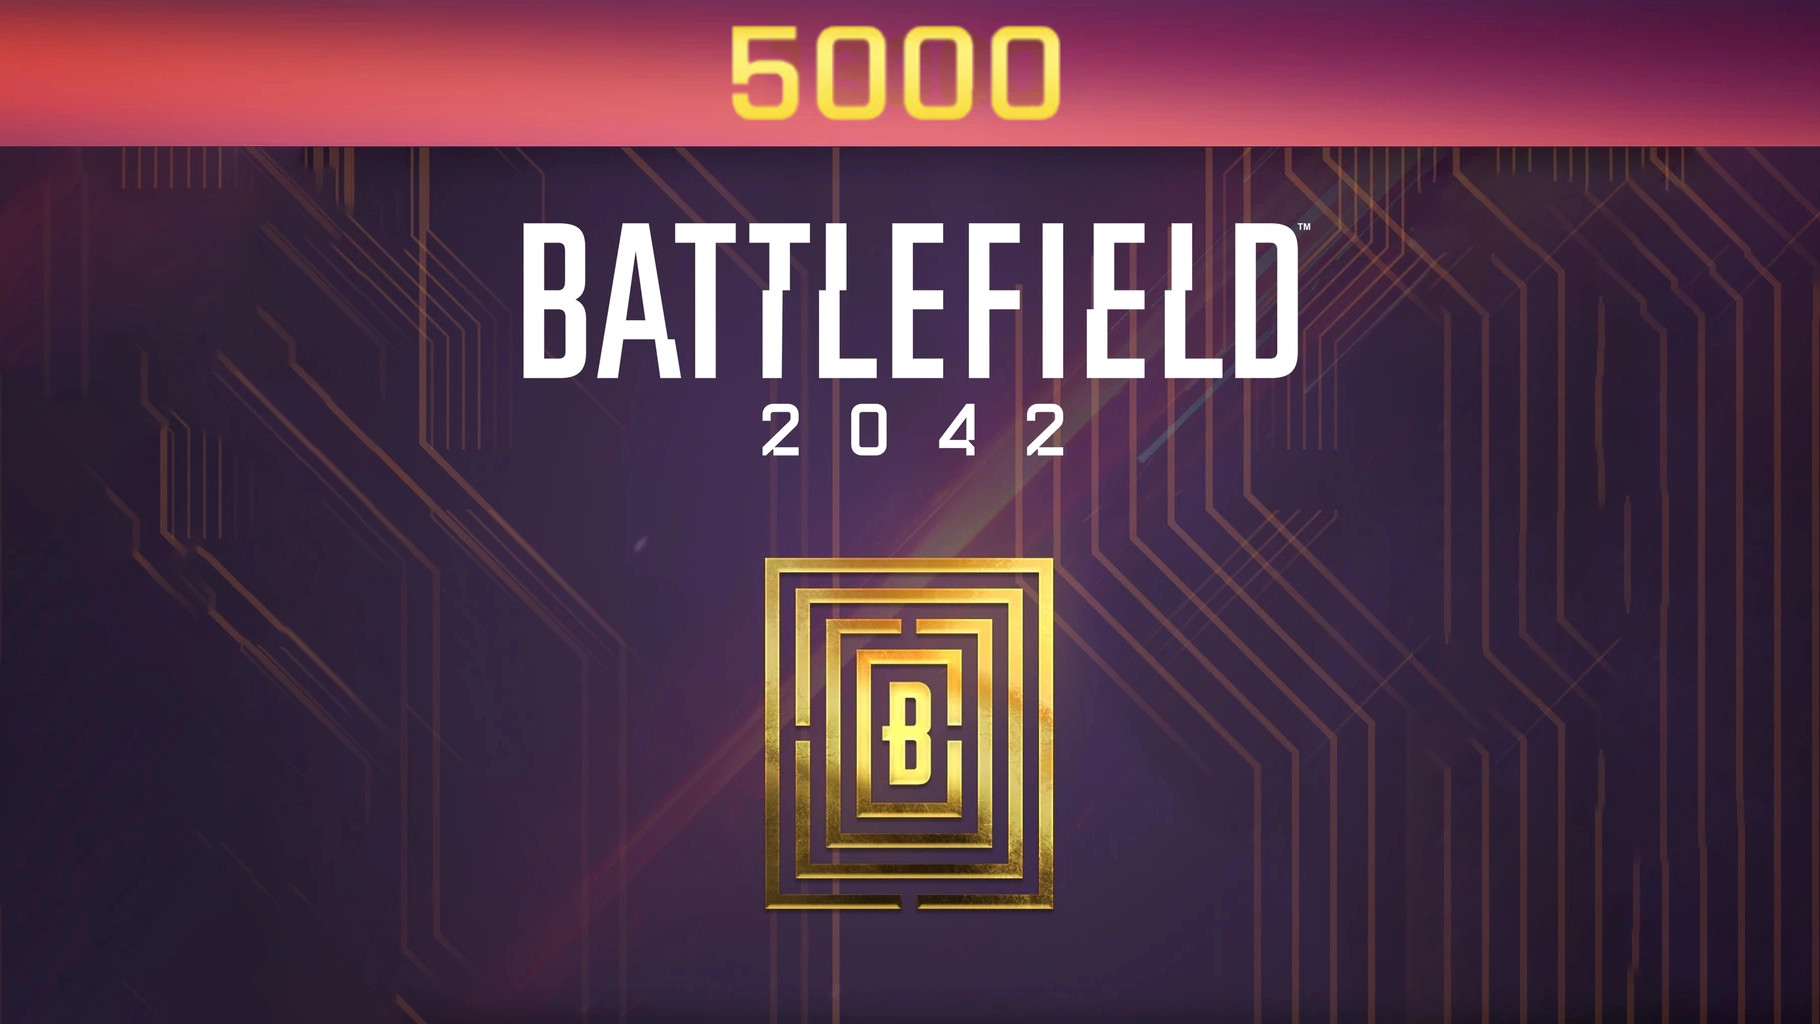 Battlefield 2042 - 5000 BFC Balance XBOX One / Xbox Series X|S CD Key USD 40.67